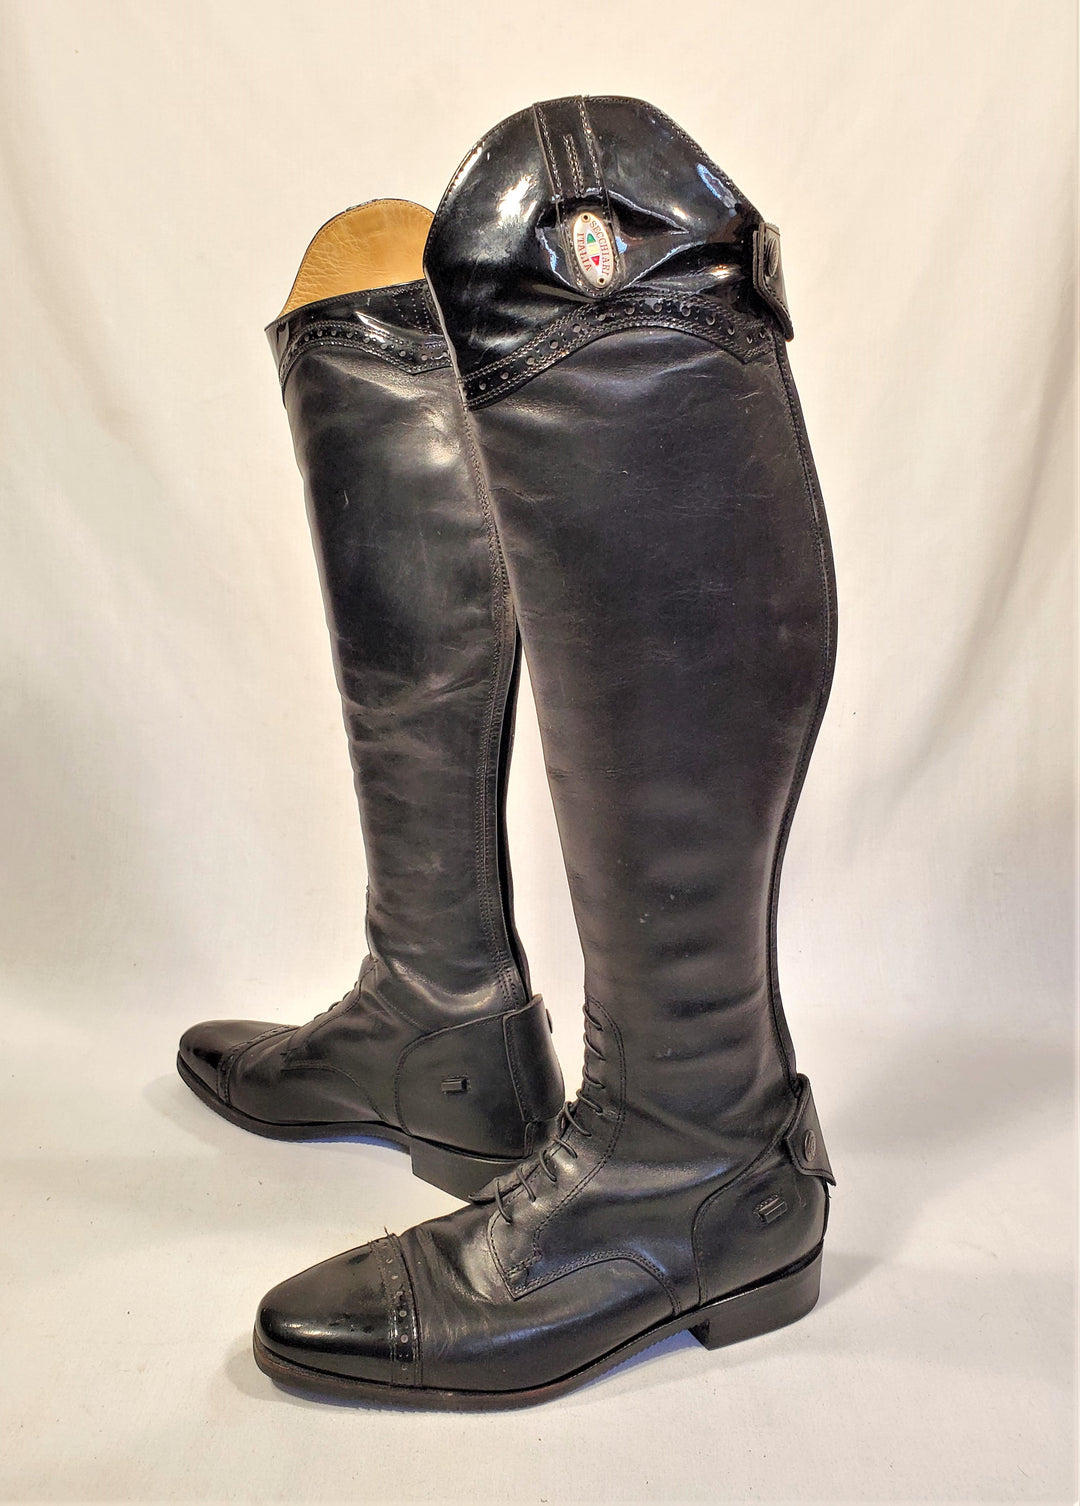 Secchiari Custom Dress Boots - Size 39.5 Slim Tall (Women's 8.5 Slim Tall)